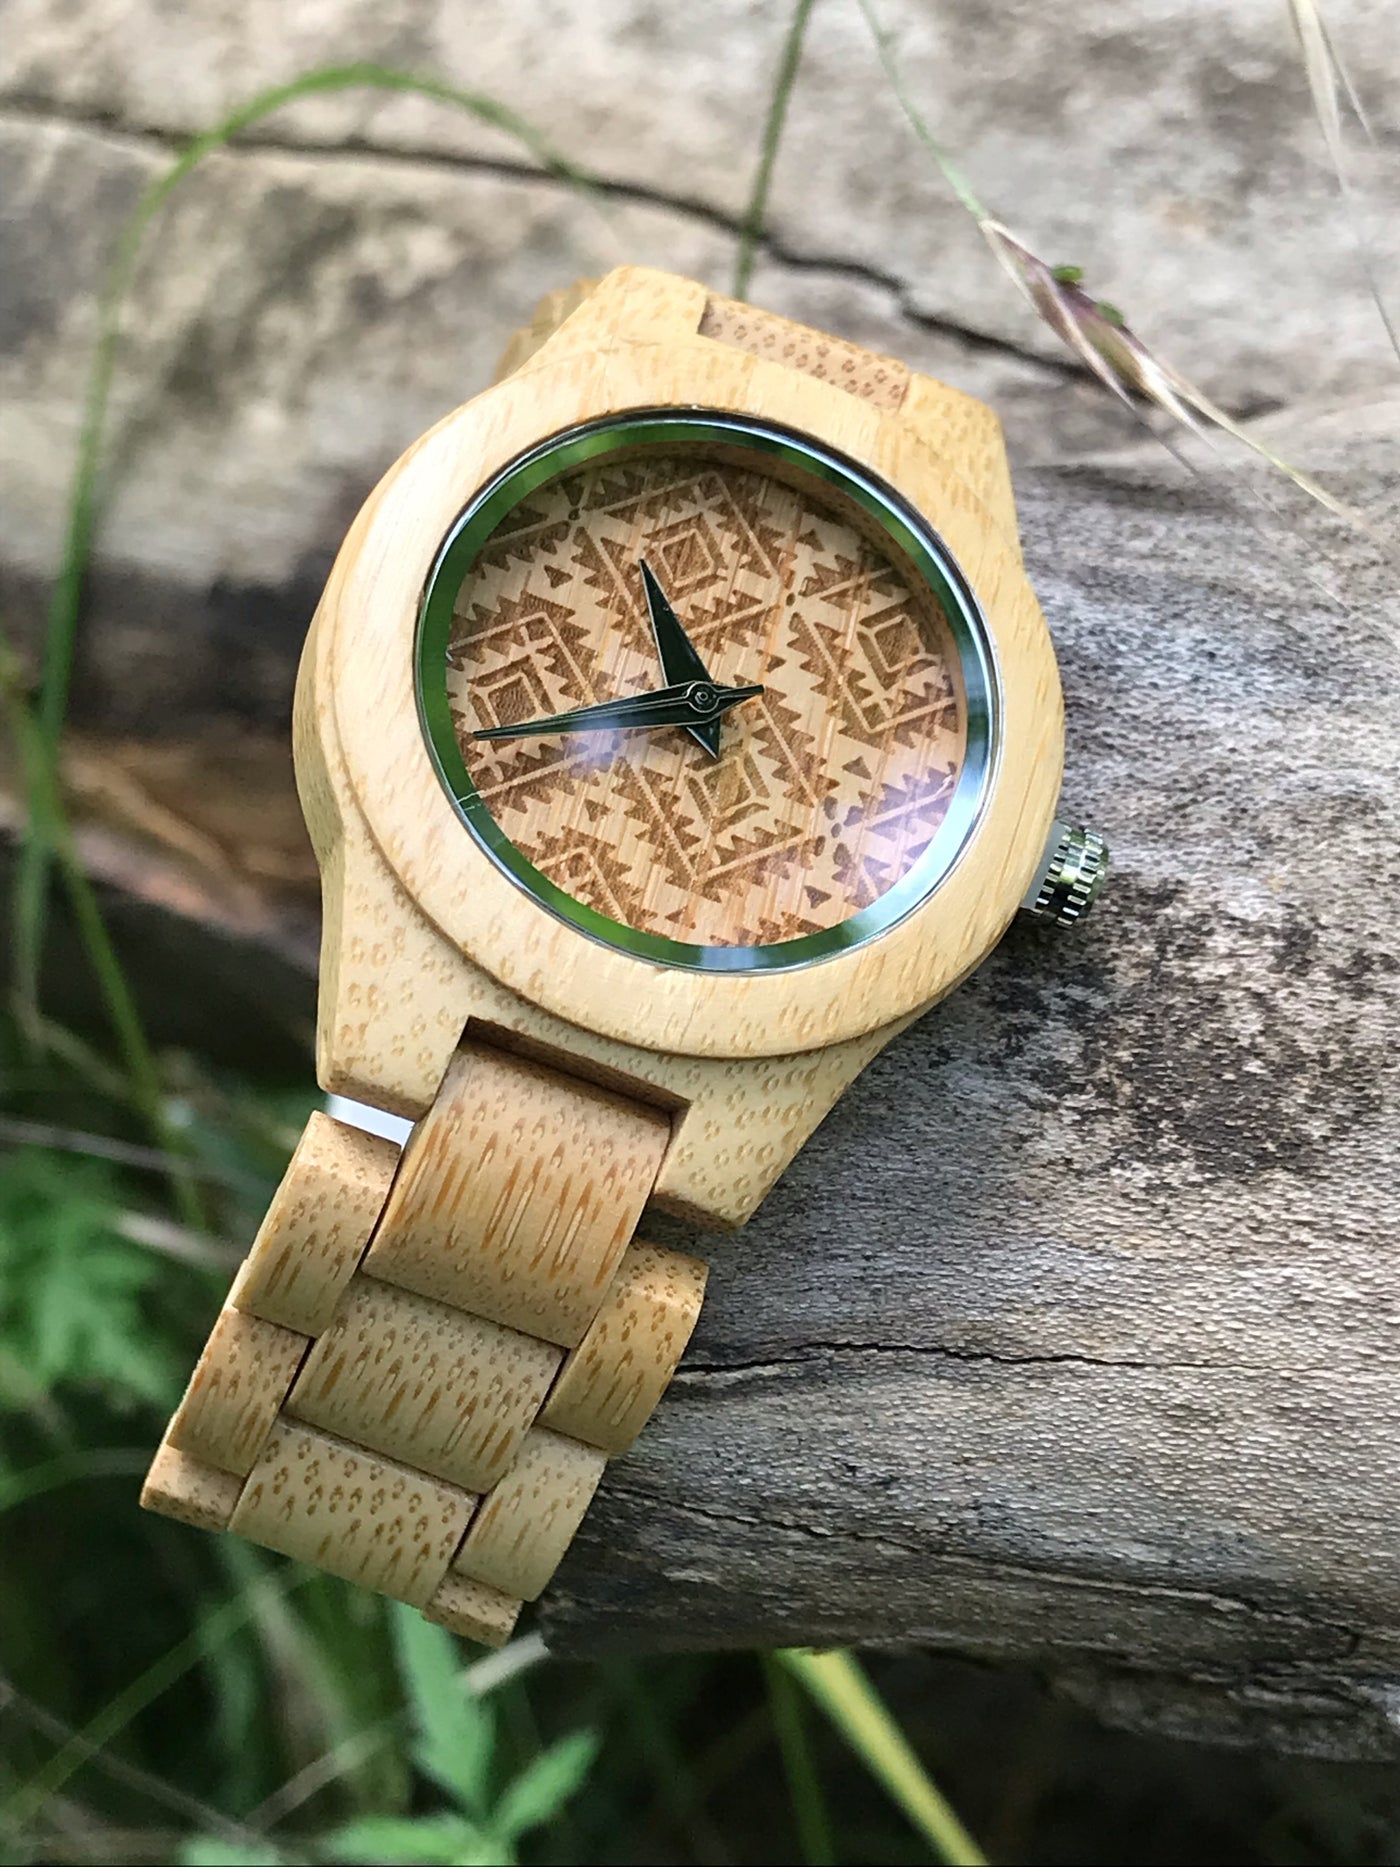 wooden watch 